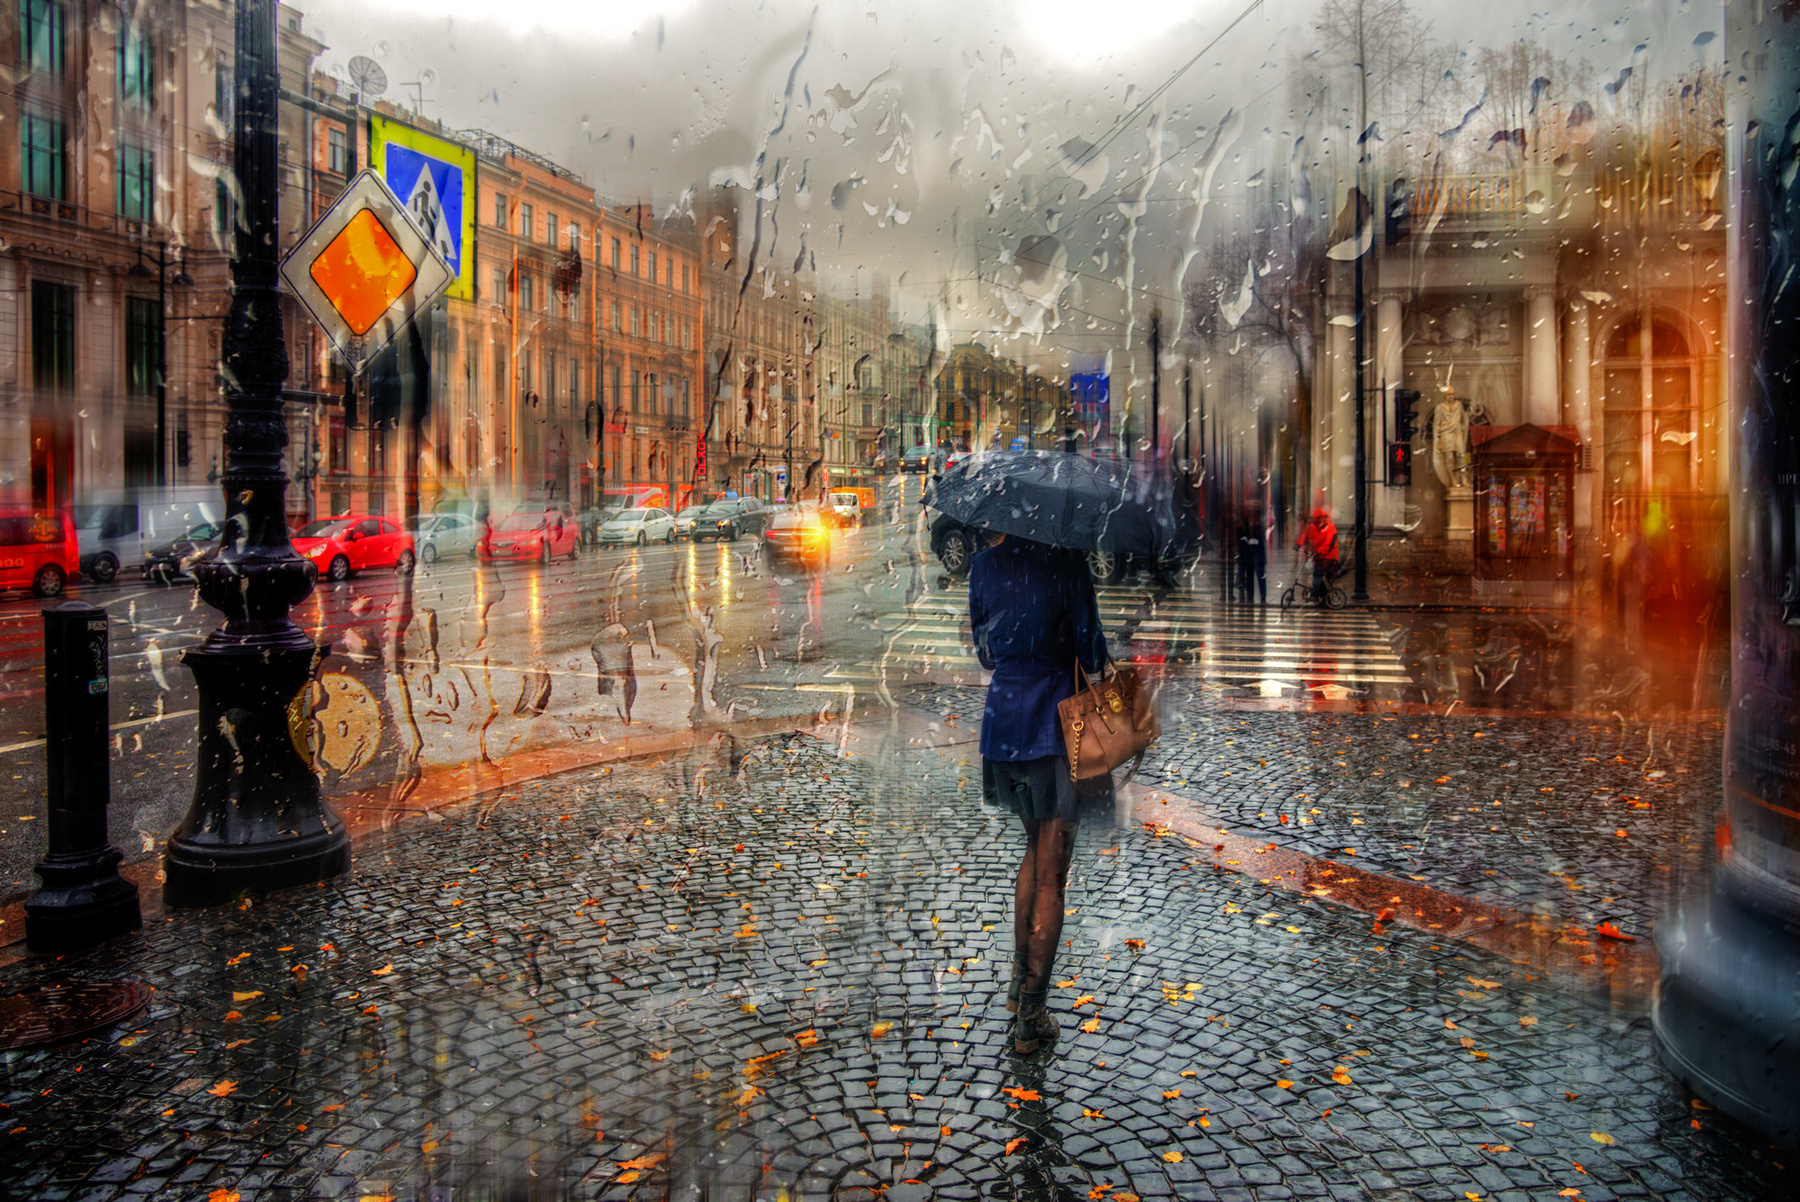 осенний дождь на Невском проспекте.. Санкт-Петербург осень октябрь